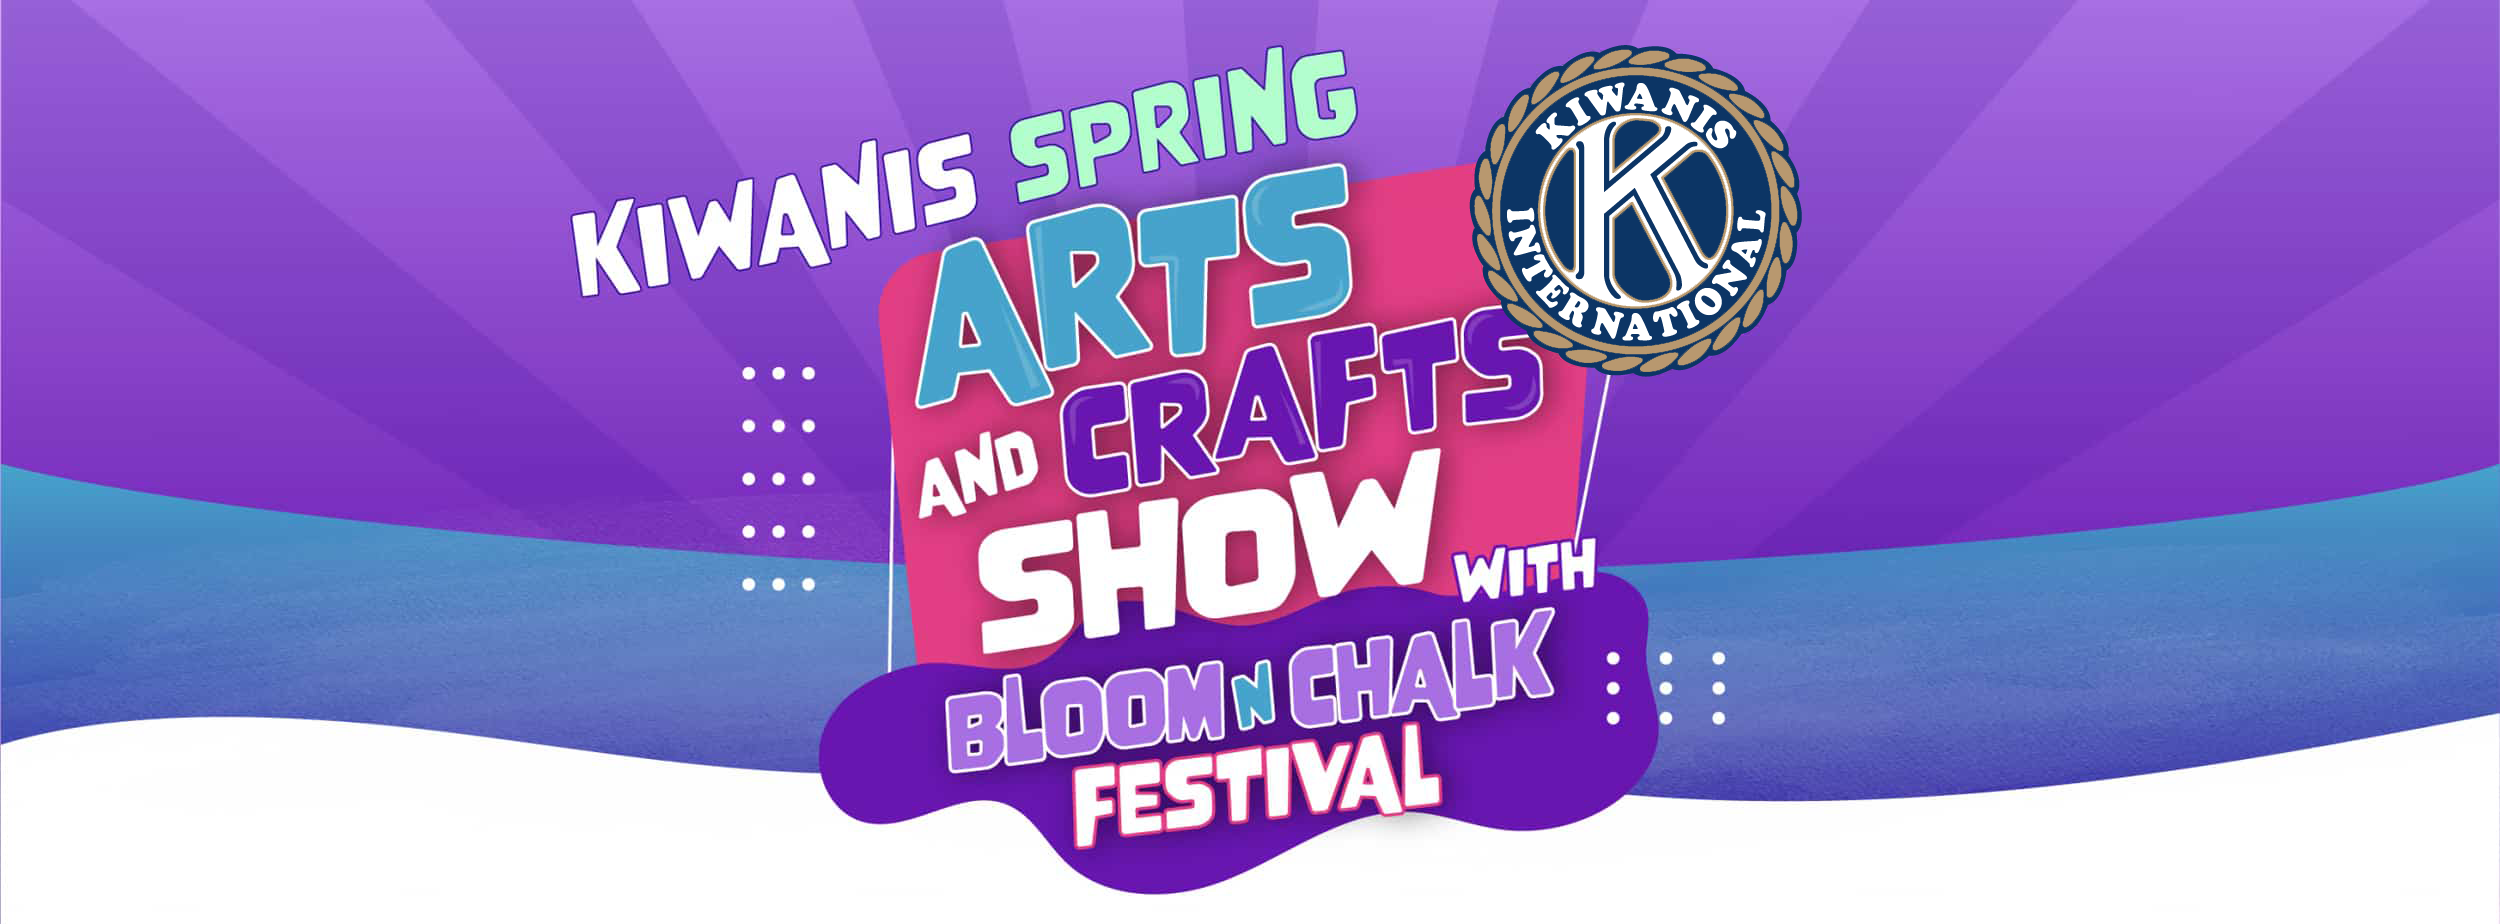 Banner-Kiwanis-Spring-Art-Craft-Show